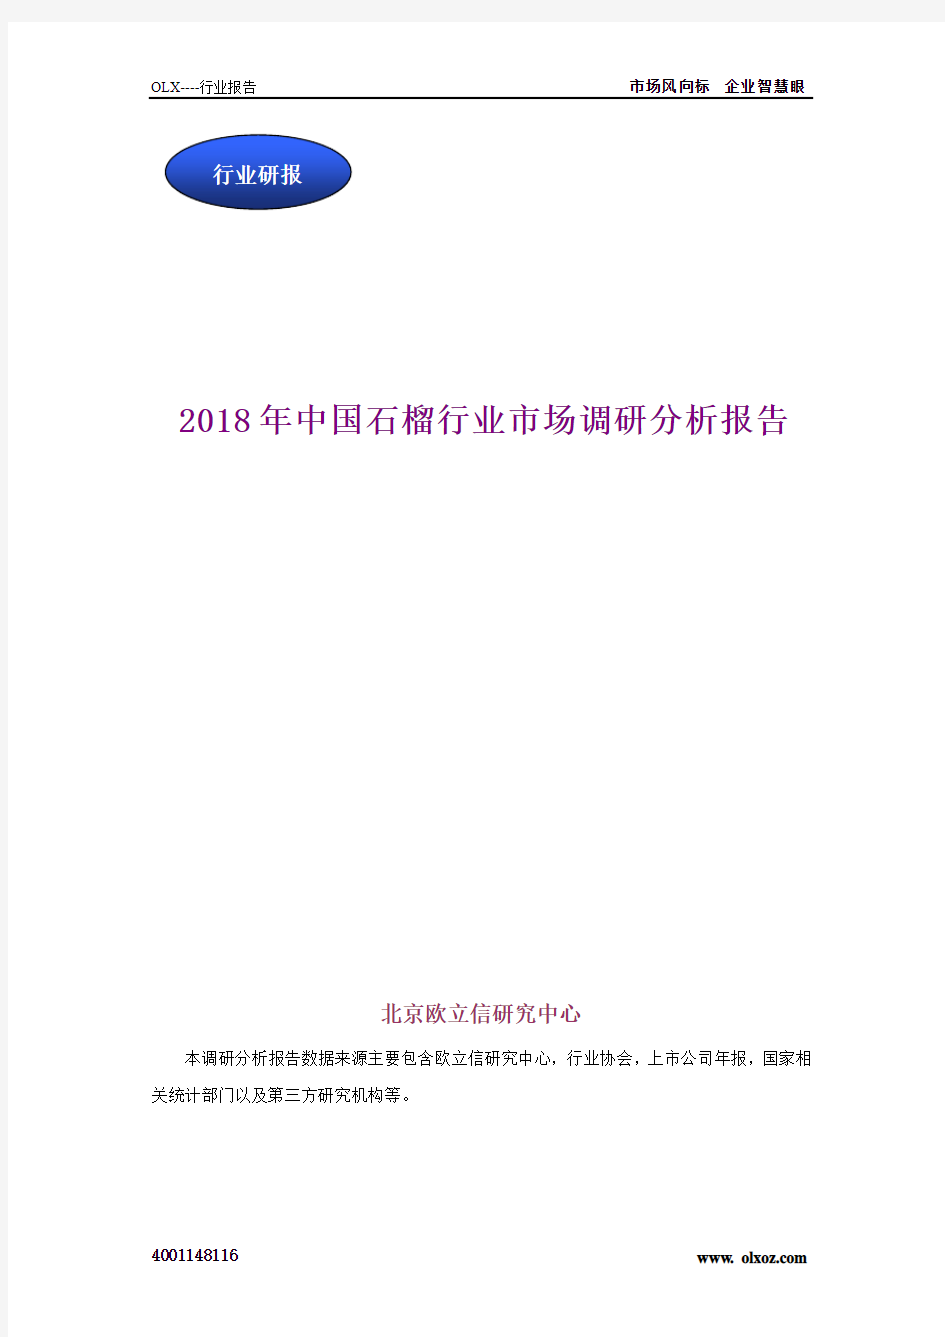 2018年中国石榴行业市场调研分析报告